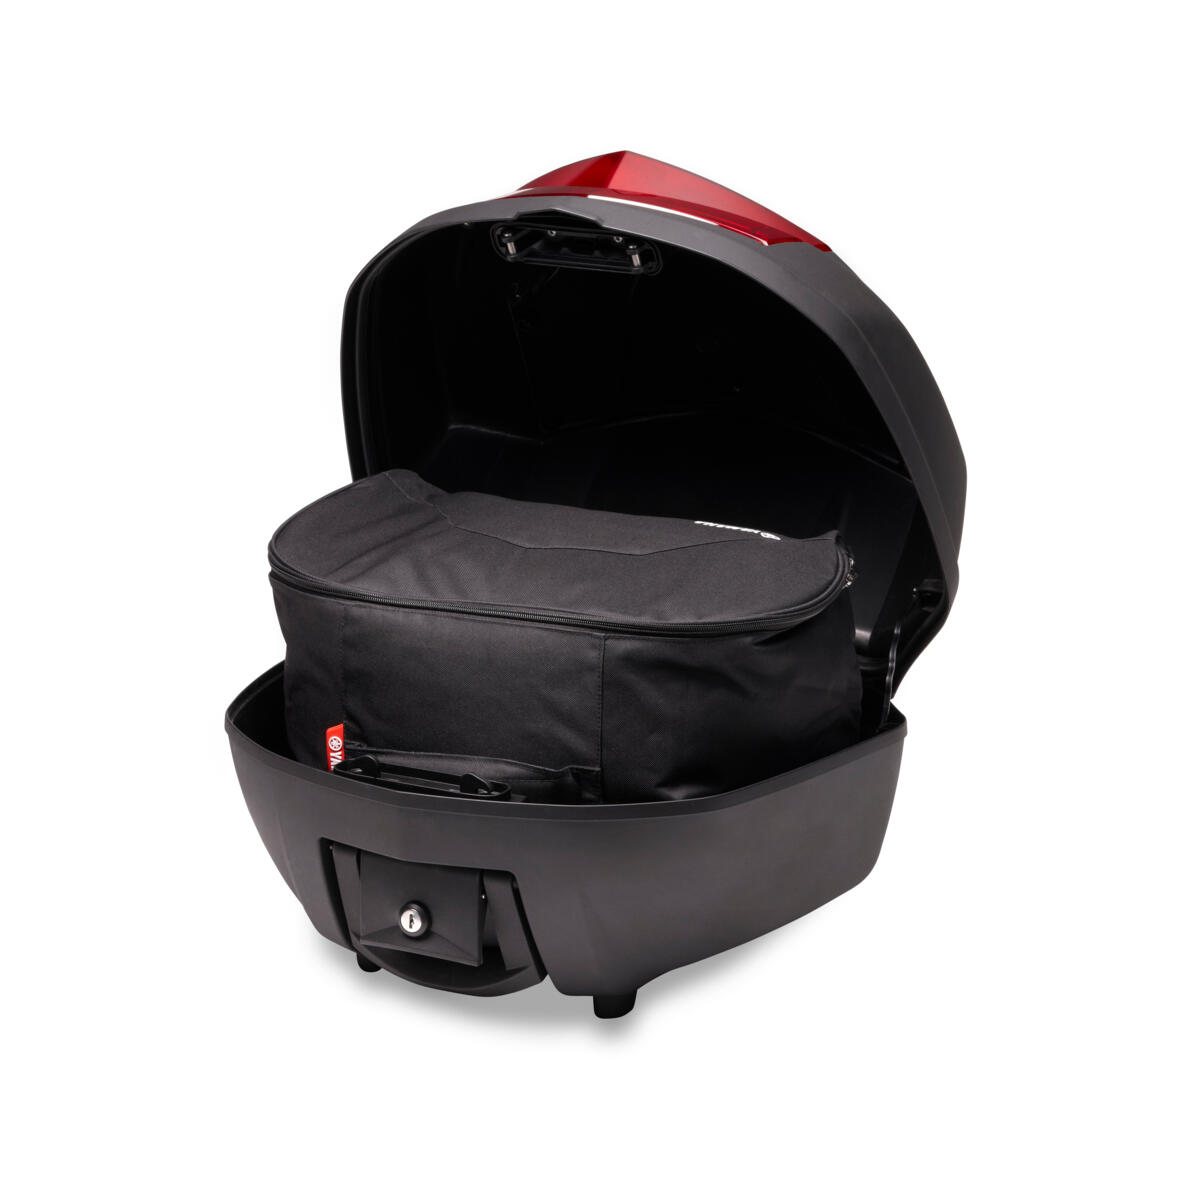 Μαλακή τσάντα για τοποθέτηση στο εσωτερικό της κεντρικής βαλίτσας City 39L της Yamaha.